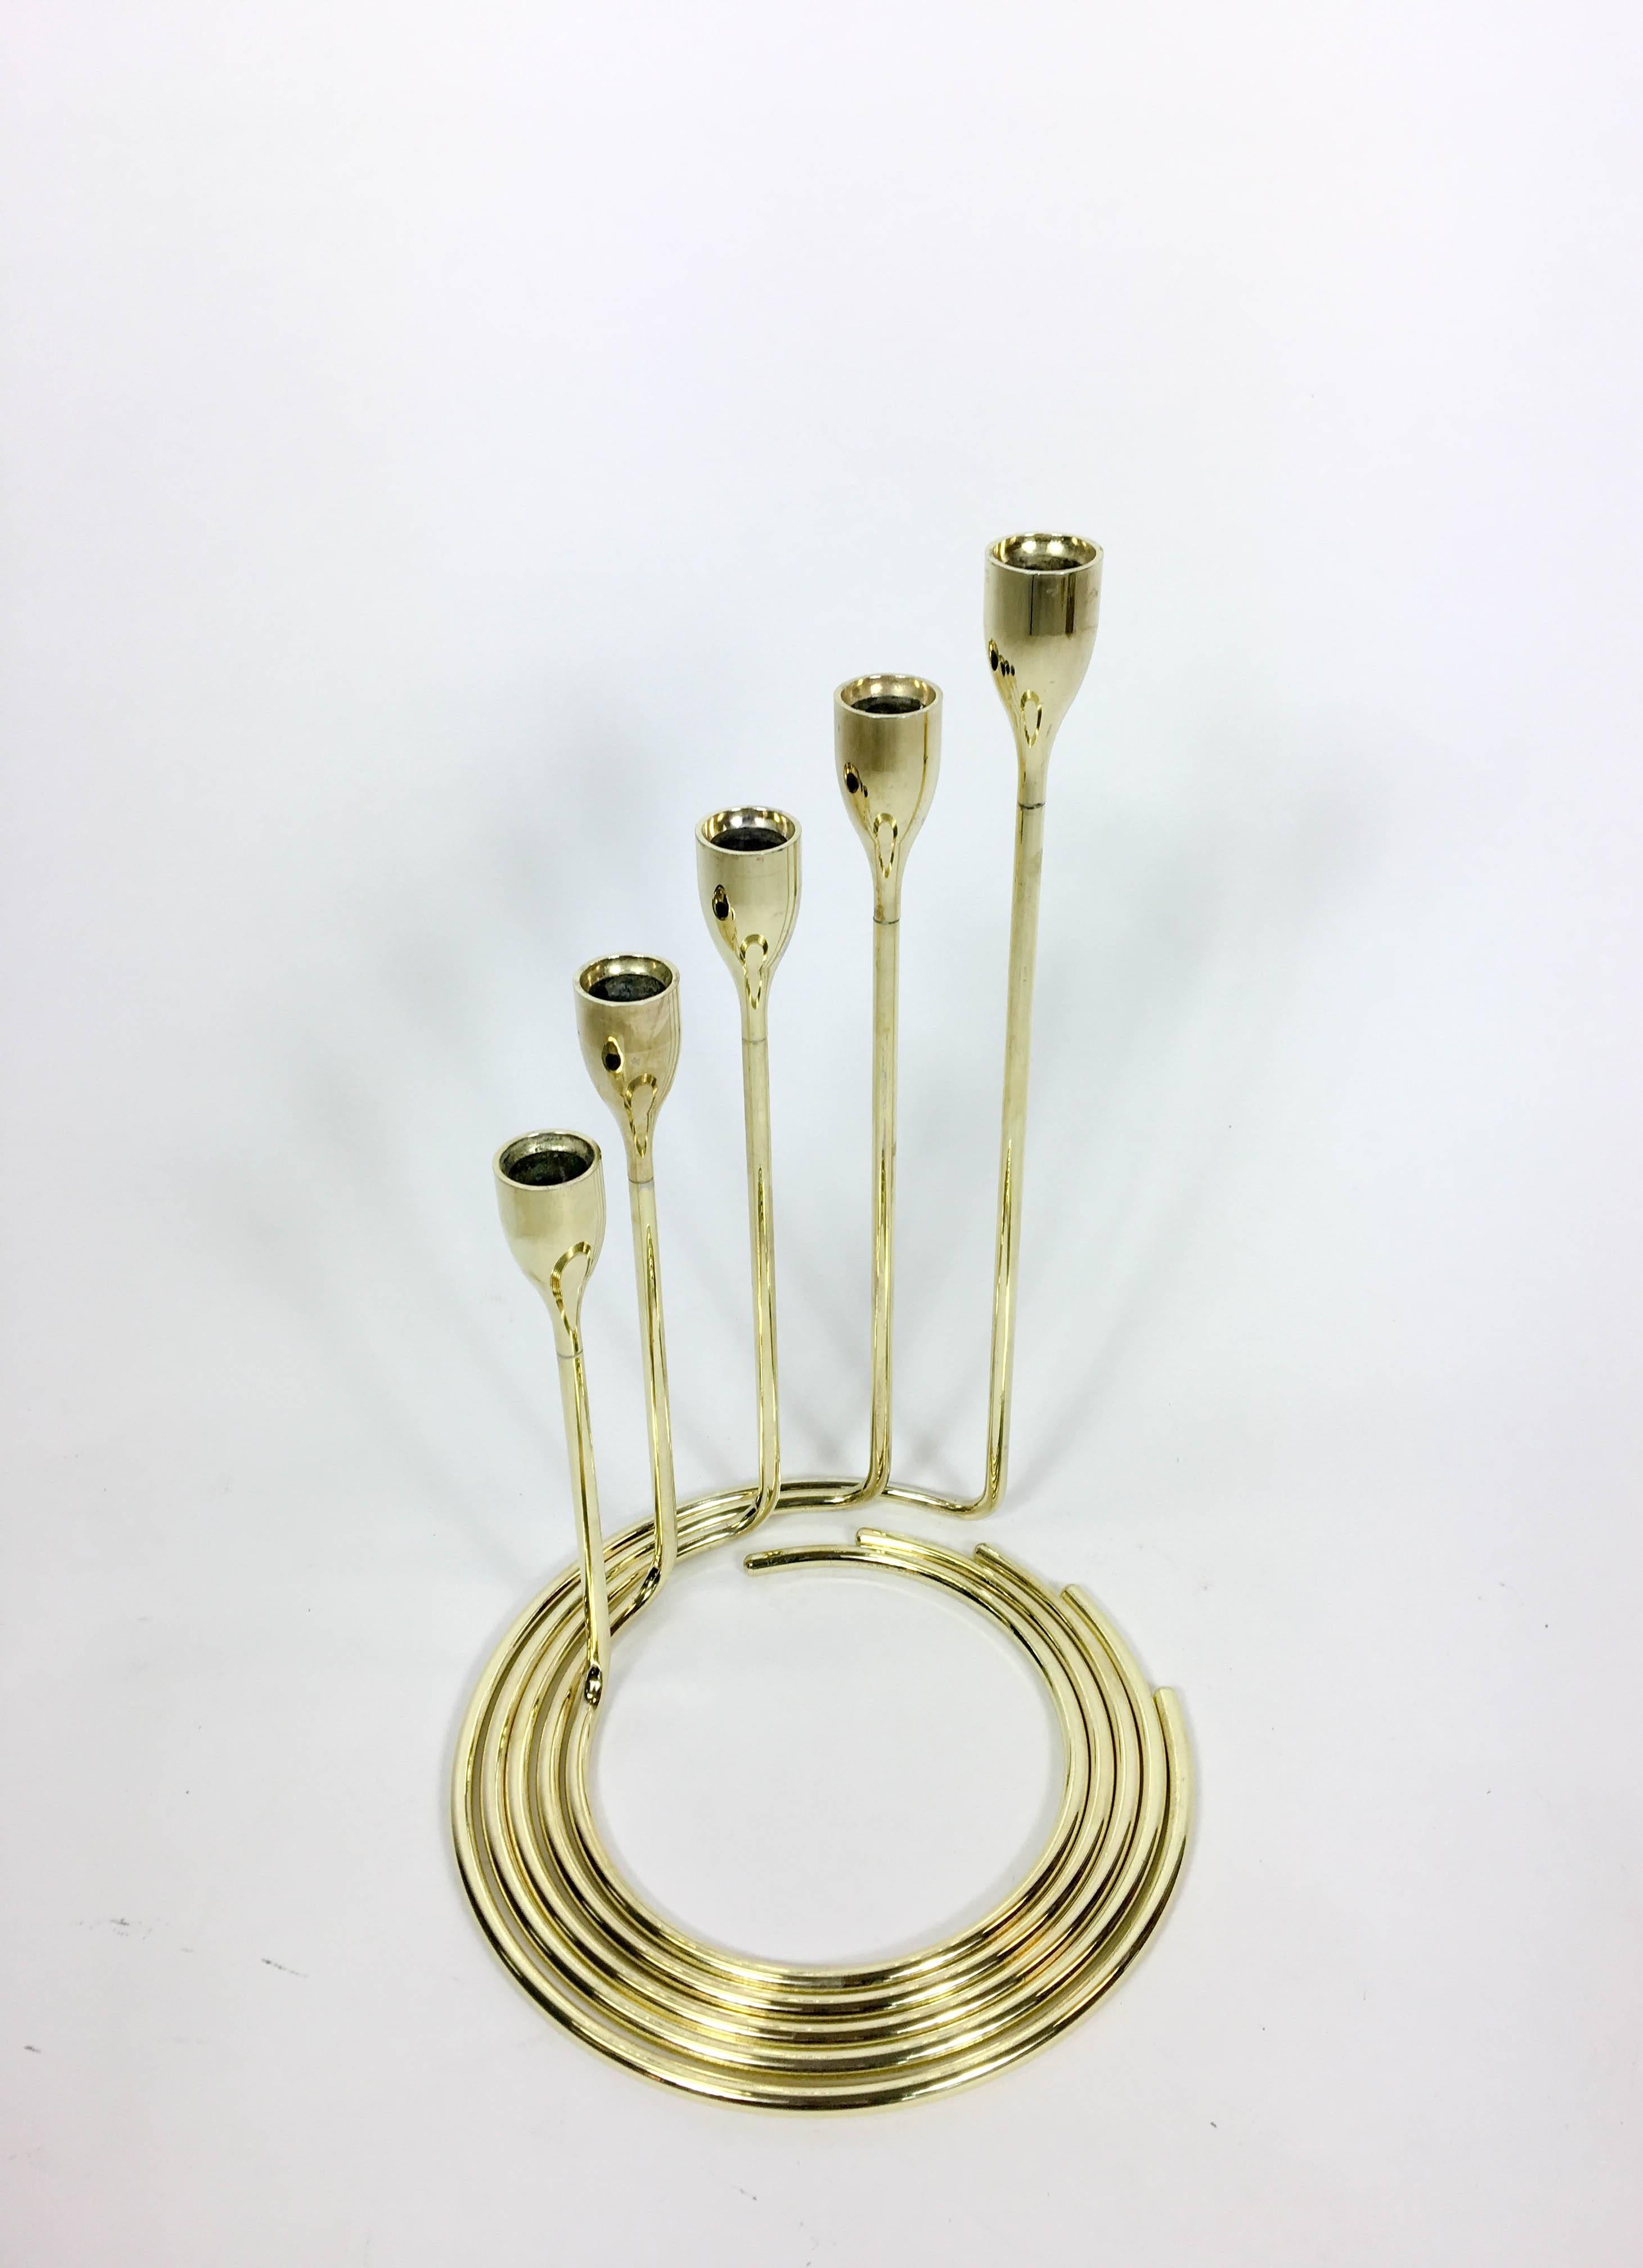 Ensemble de candélabres danois en spirale. Cinq chandeliers séparés avec des bases en spirale qui s'emboîtent parfaitement pour former un candélabre en spirale. Laiton massif, années 1960.